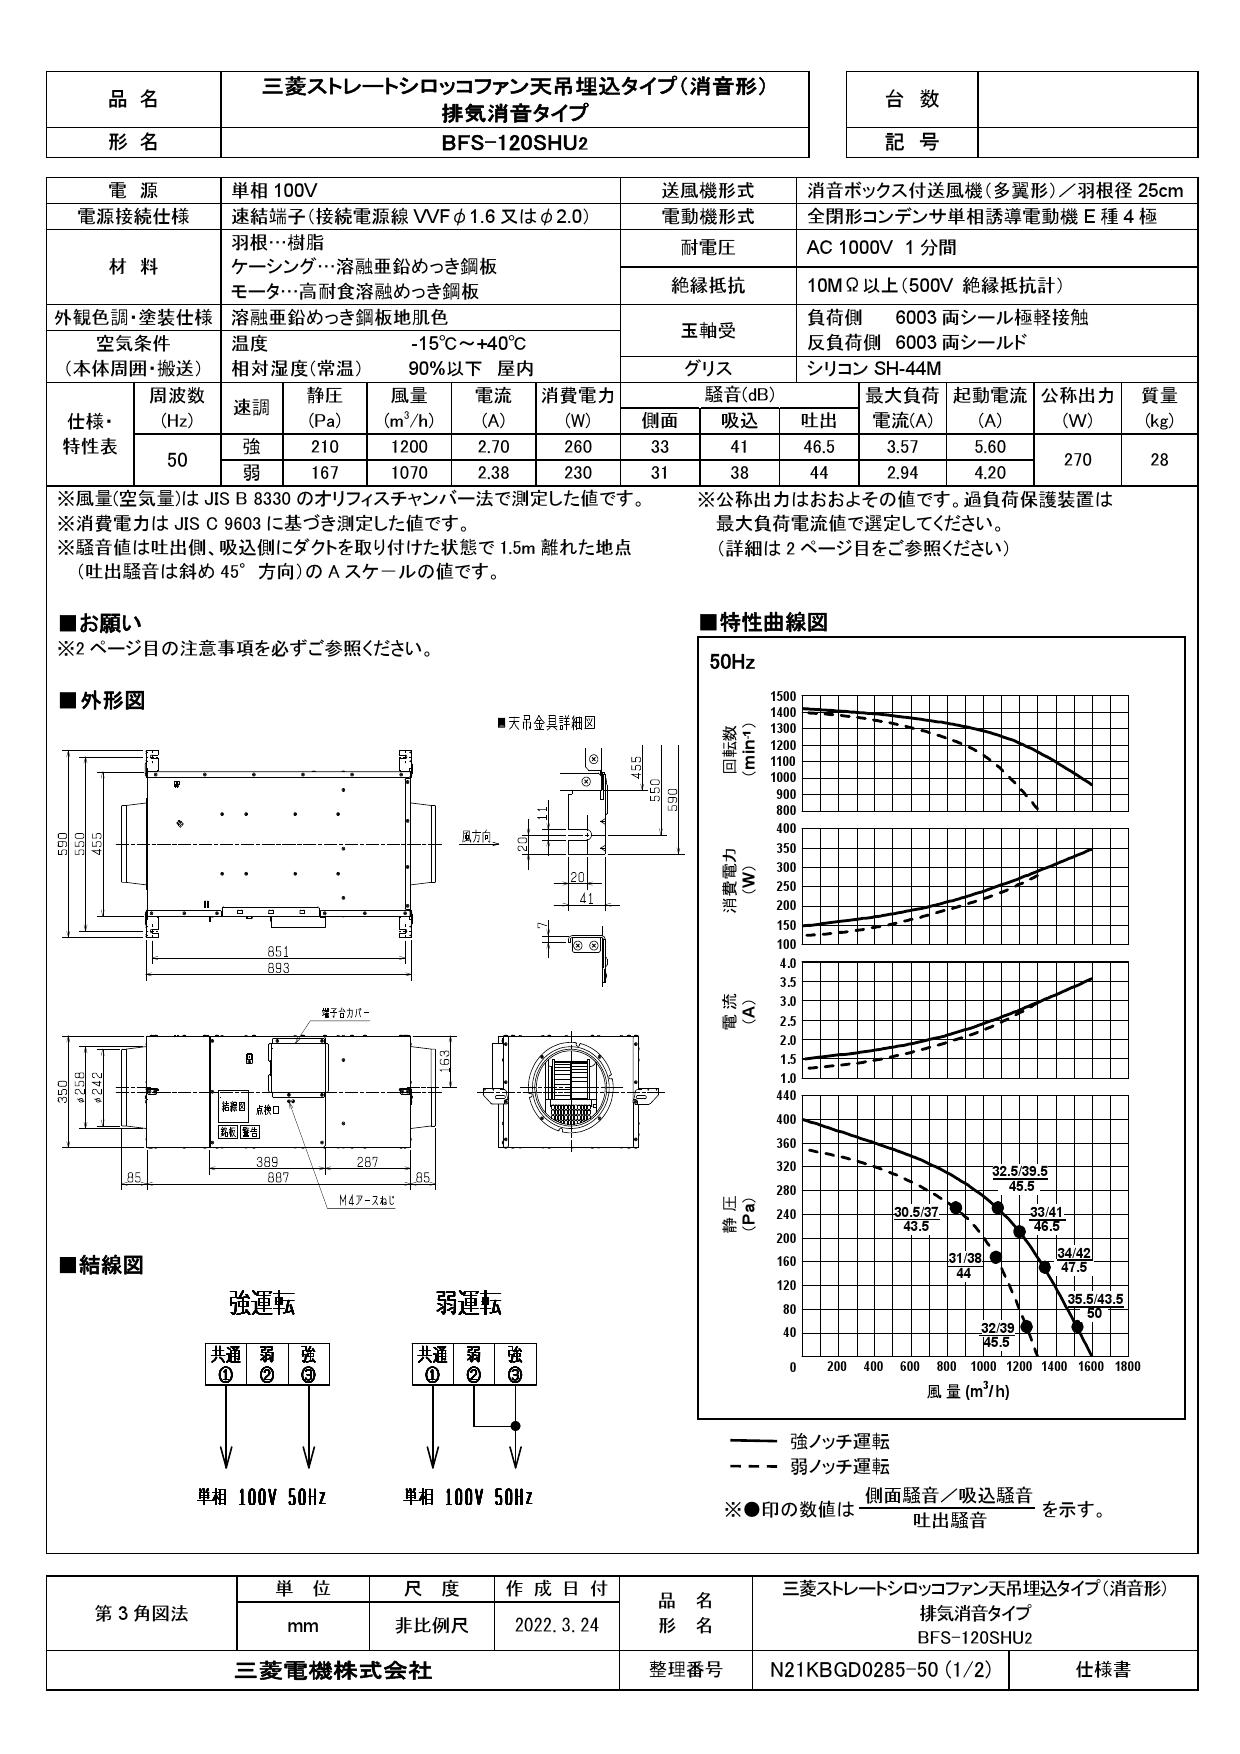 三菱 mitsubishi 換気扇 産業用送風機 本体ストレートシロッコファン BFS-120TUG - 3